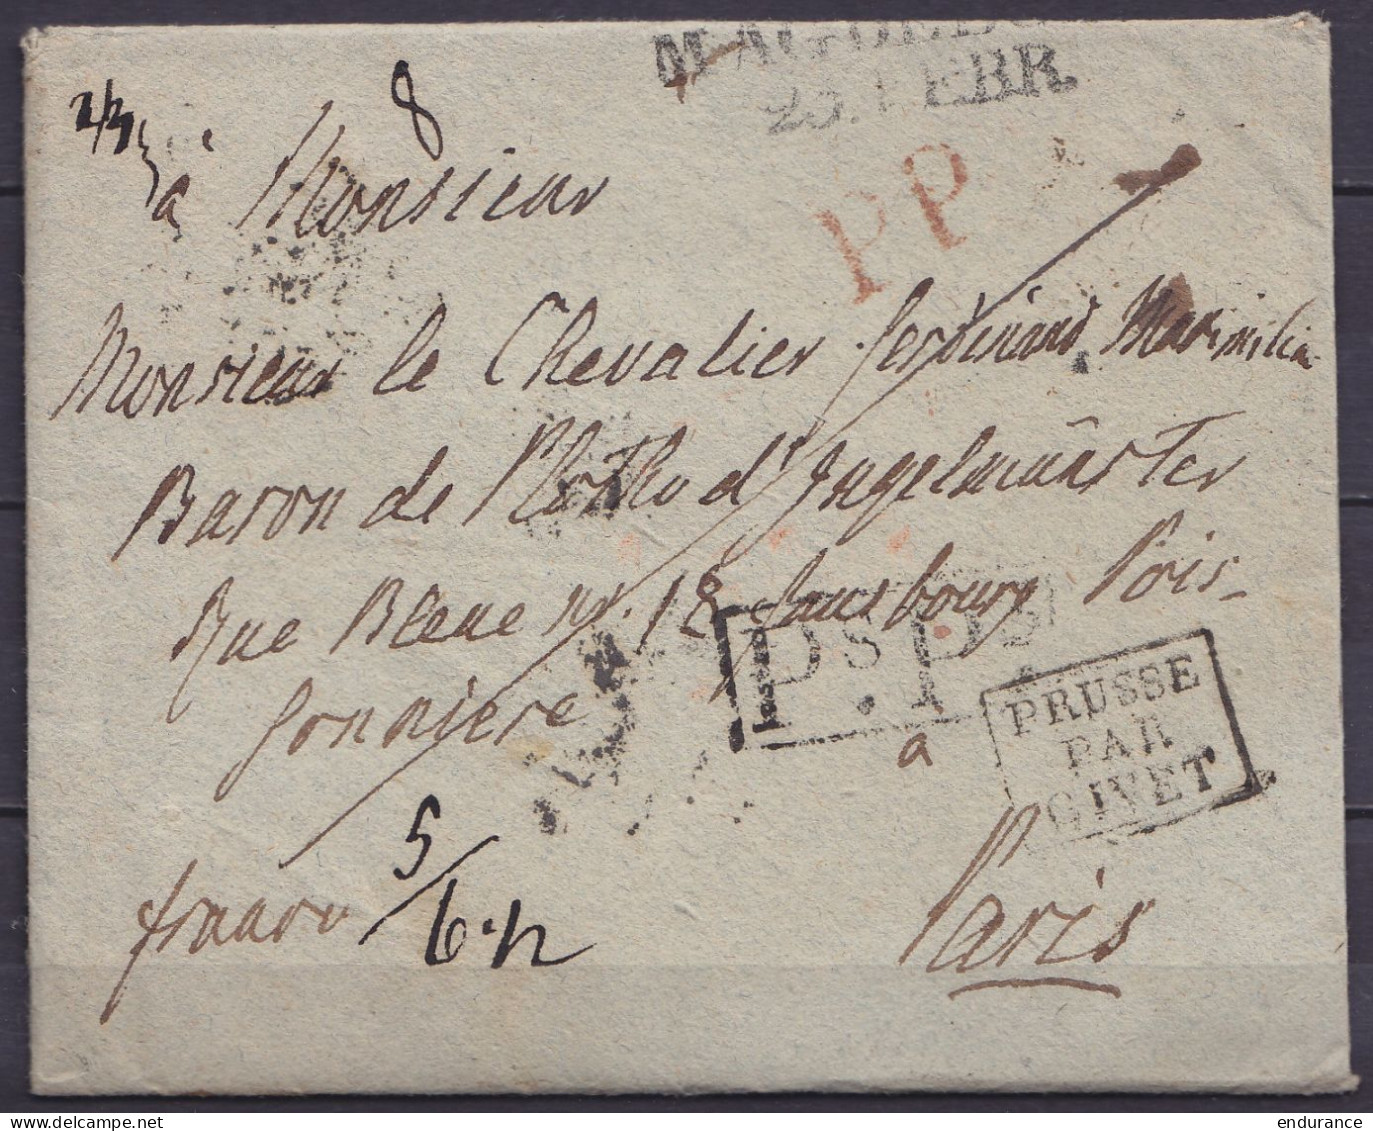 LAC Datée 19 Février 1820 De MAGDEBOURG Pour PARIS - Griffes "MAGDEBURG /20.FEBR.", "PP" & [Ps.Ps.] - Marque [PRUSSE PAR - Vorphilatelie